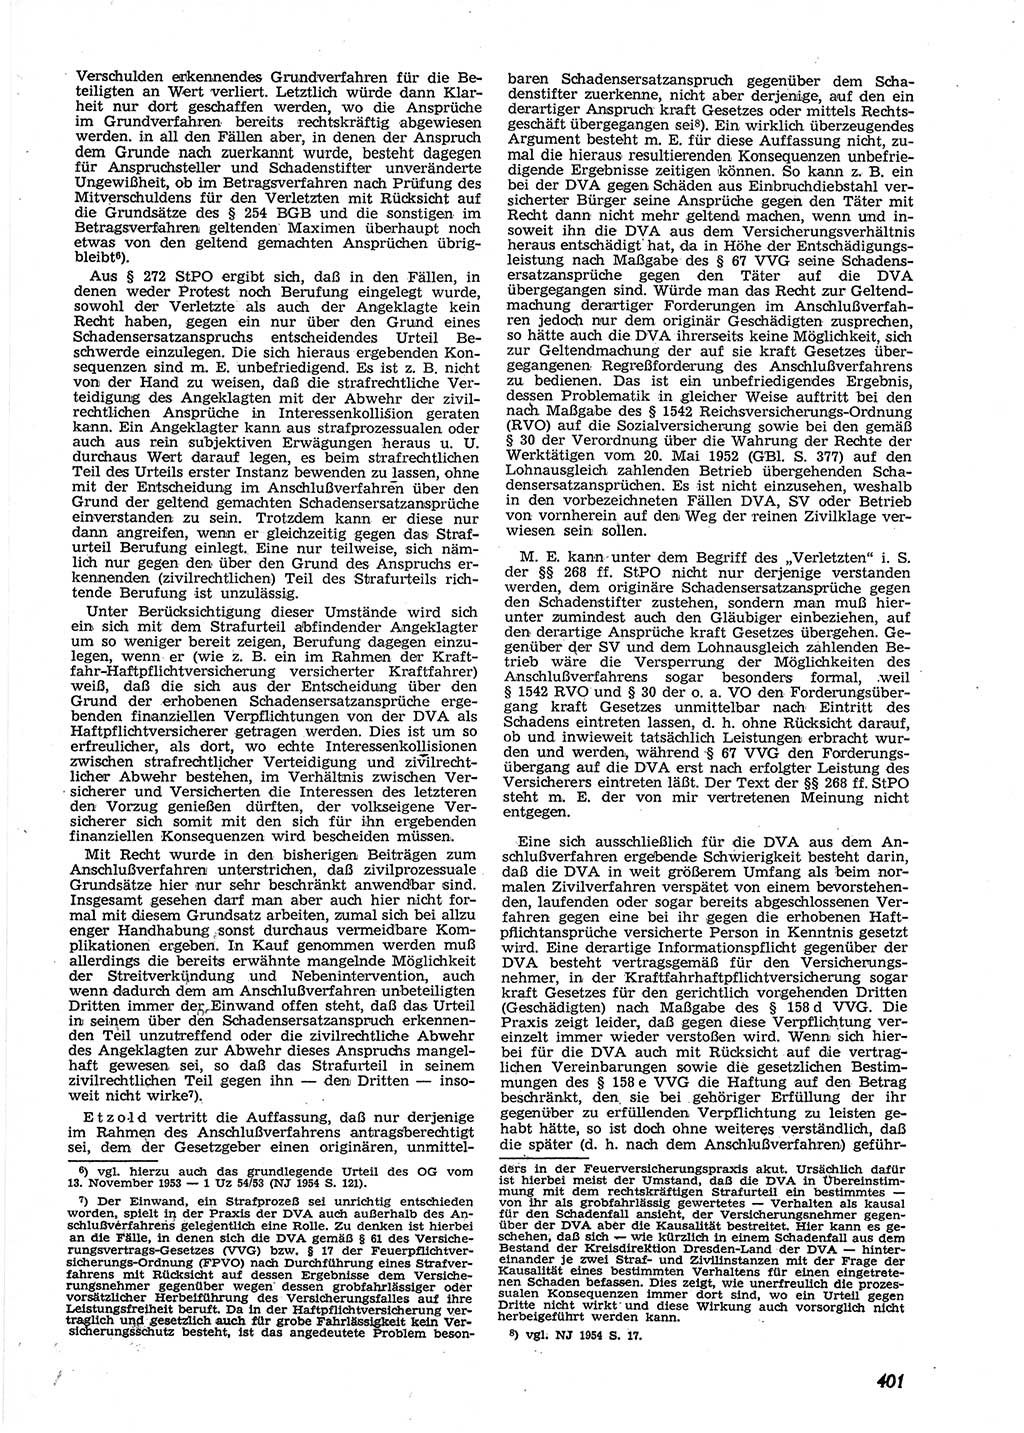 Neue Justiz (NJ), Zeitschrift für Recht und Rechtswissenschaft [Deutsche Demokratische Republik (DDR)], 9. Jahrgang 1955, Seite 401 (NJ DDR 1955, S. 401)